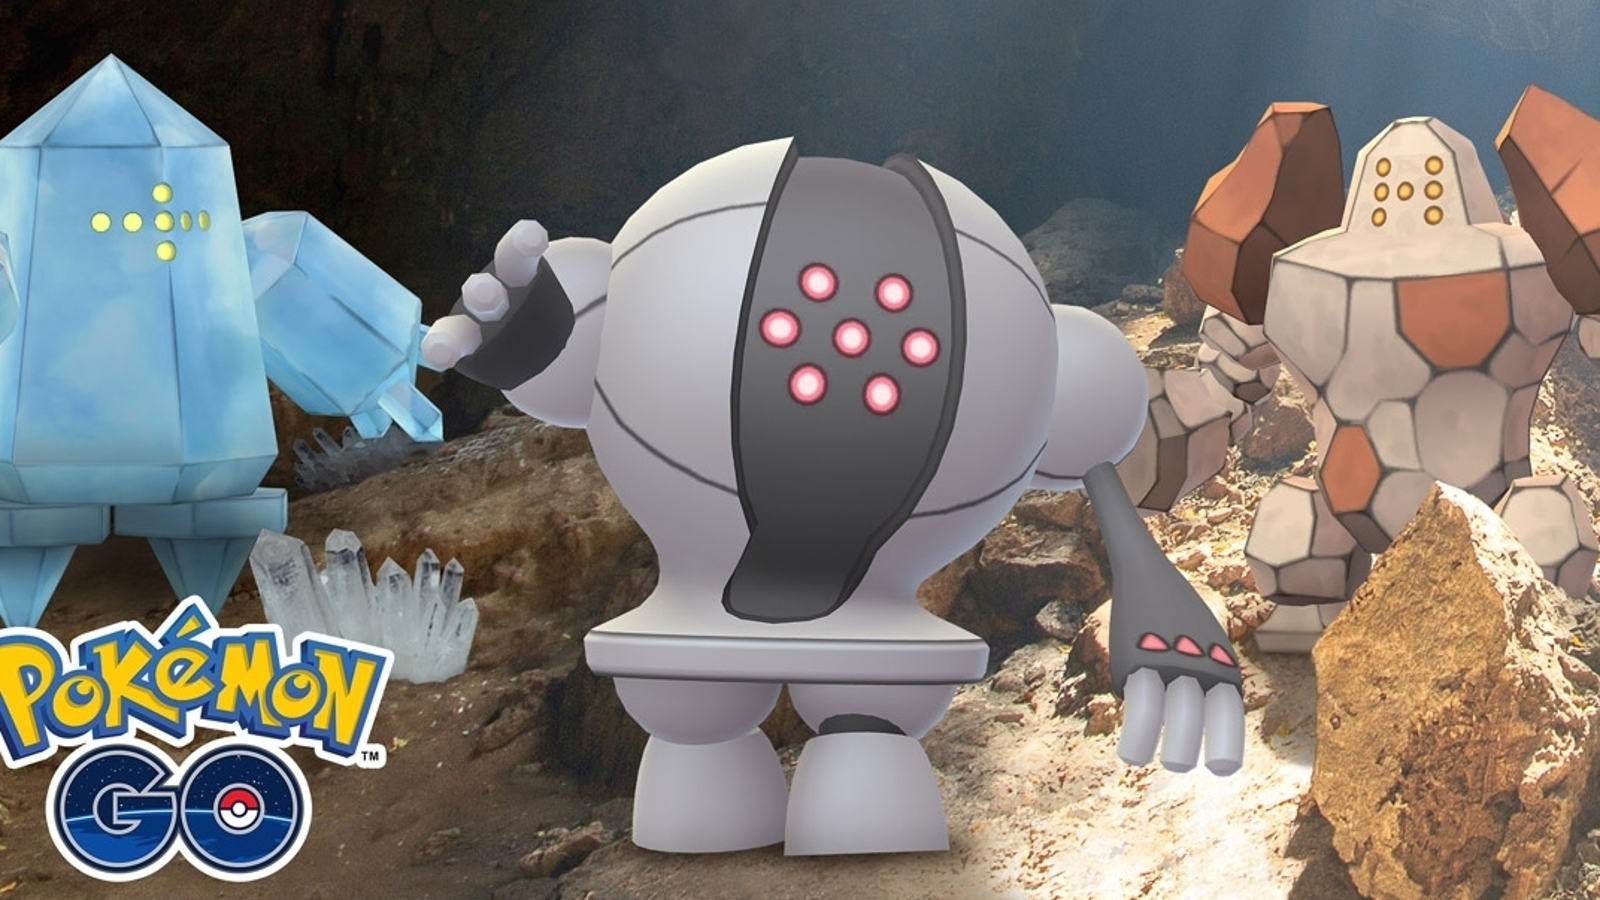 Pokémon GO - Trio de Regis Brilhante e Descoberta Colossal com